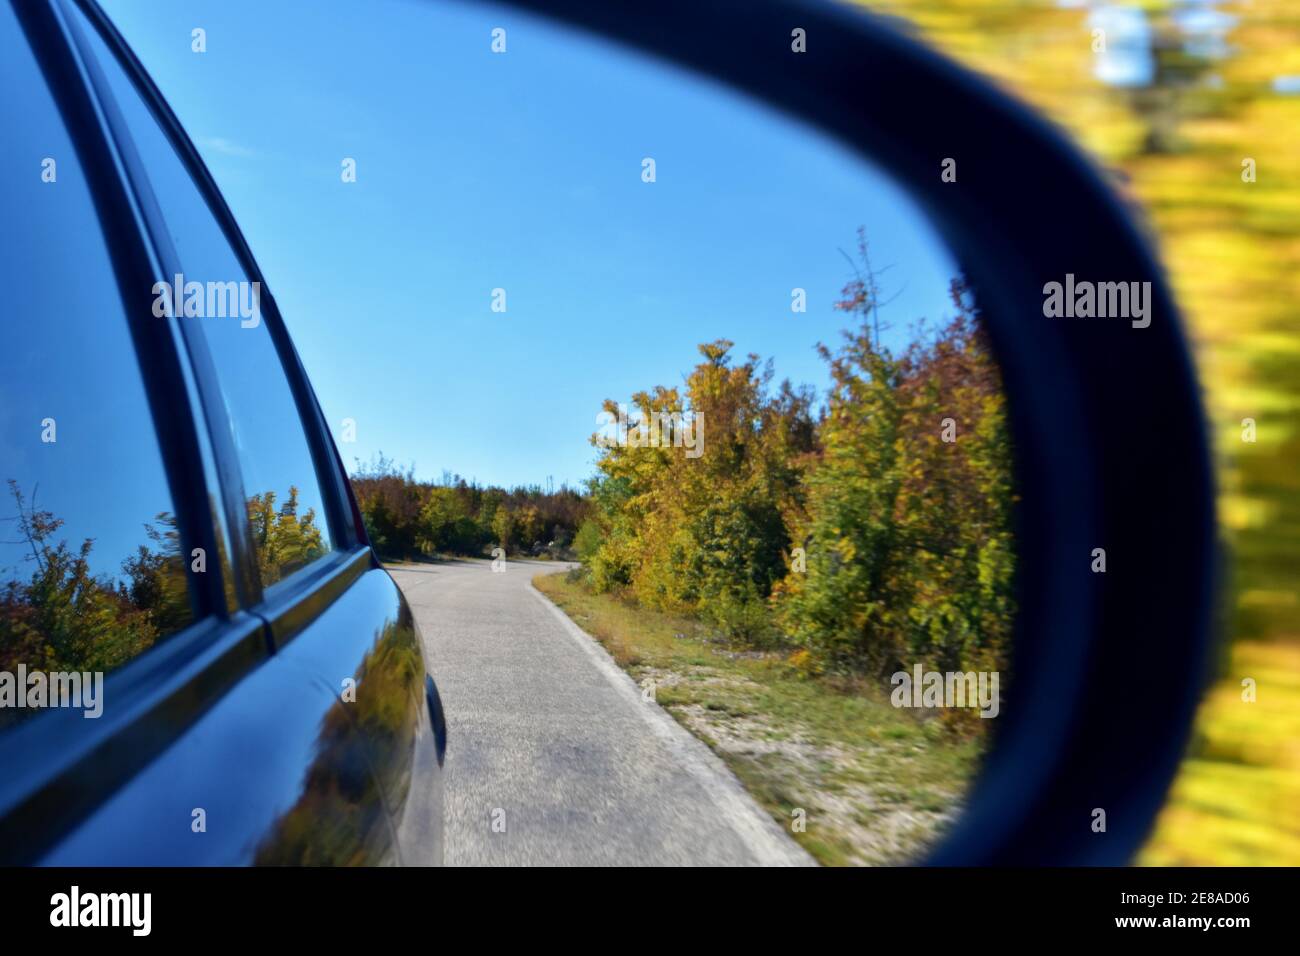 Ein auto fährt mit einem auto im spiegel die straße entlang.